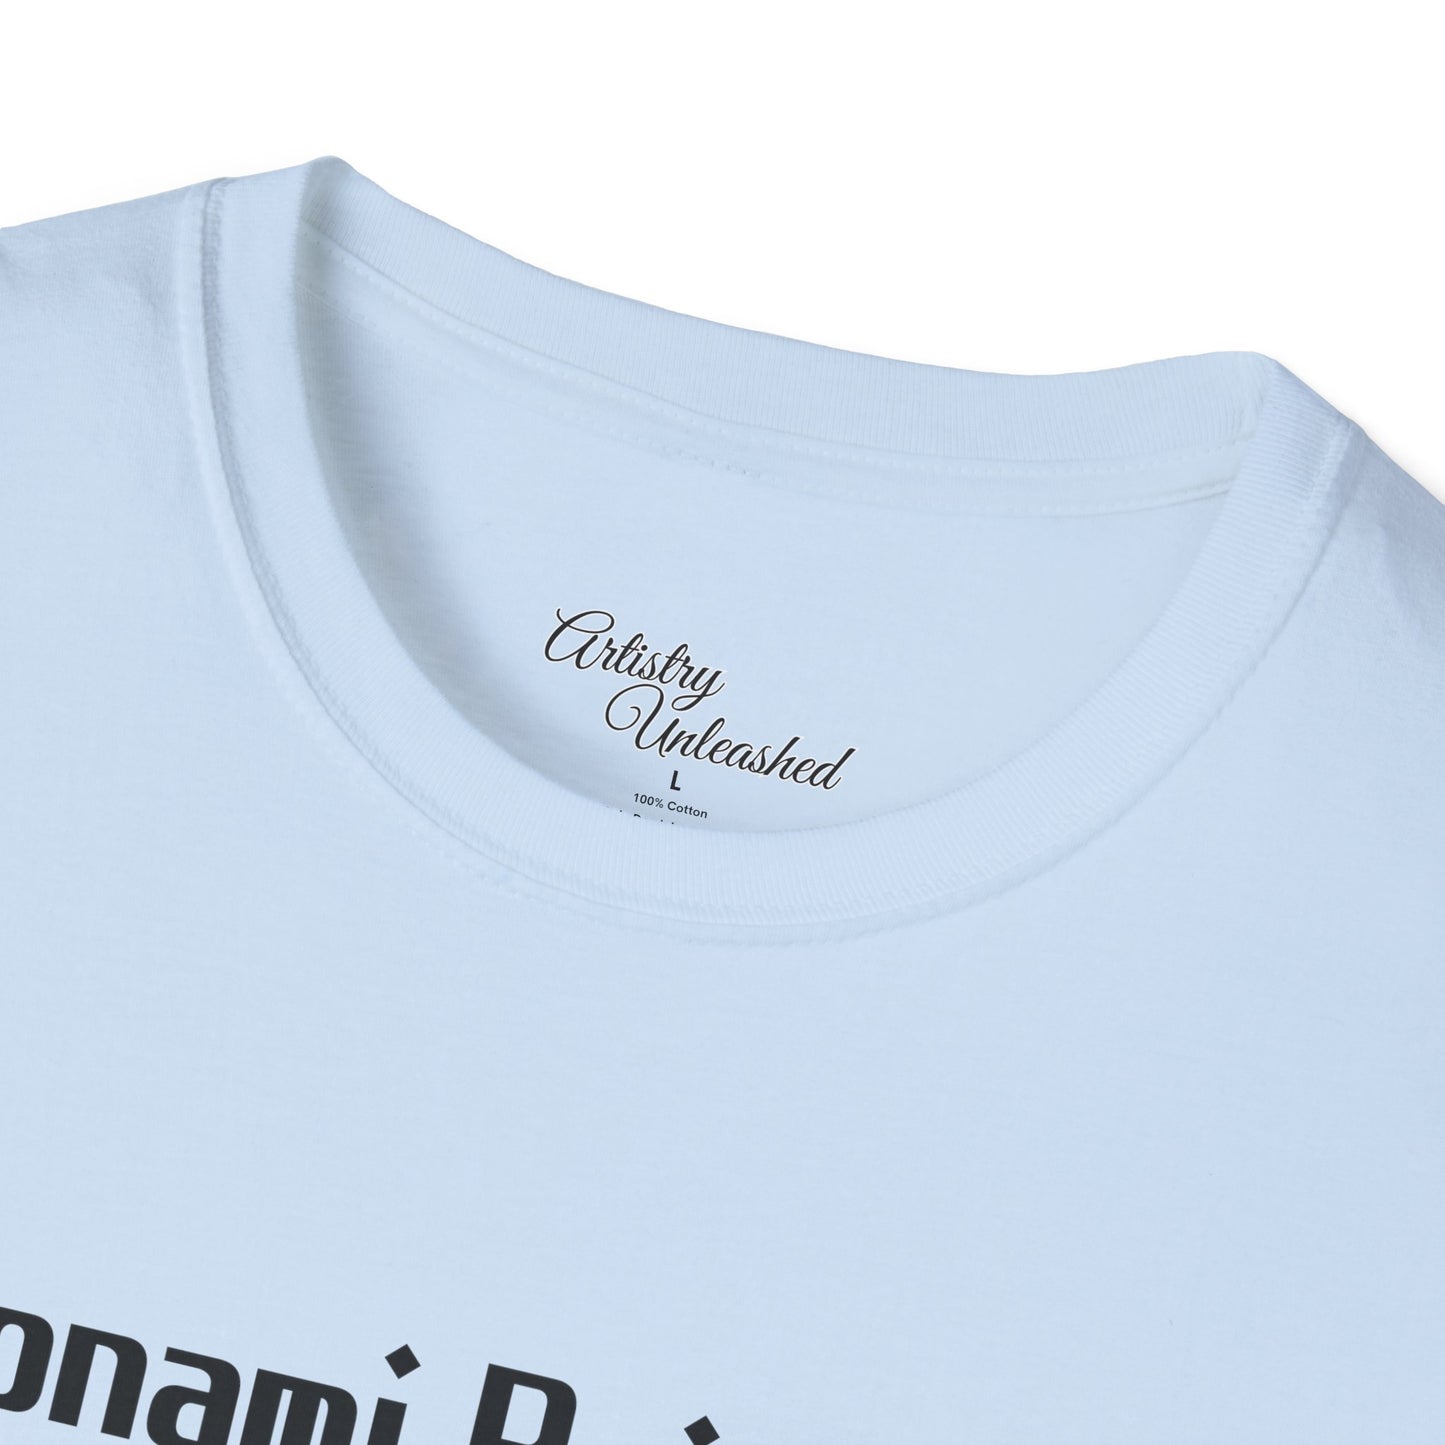 Toonami Raised Me Black Unisex Softstyle T-Shirt